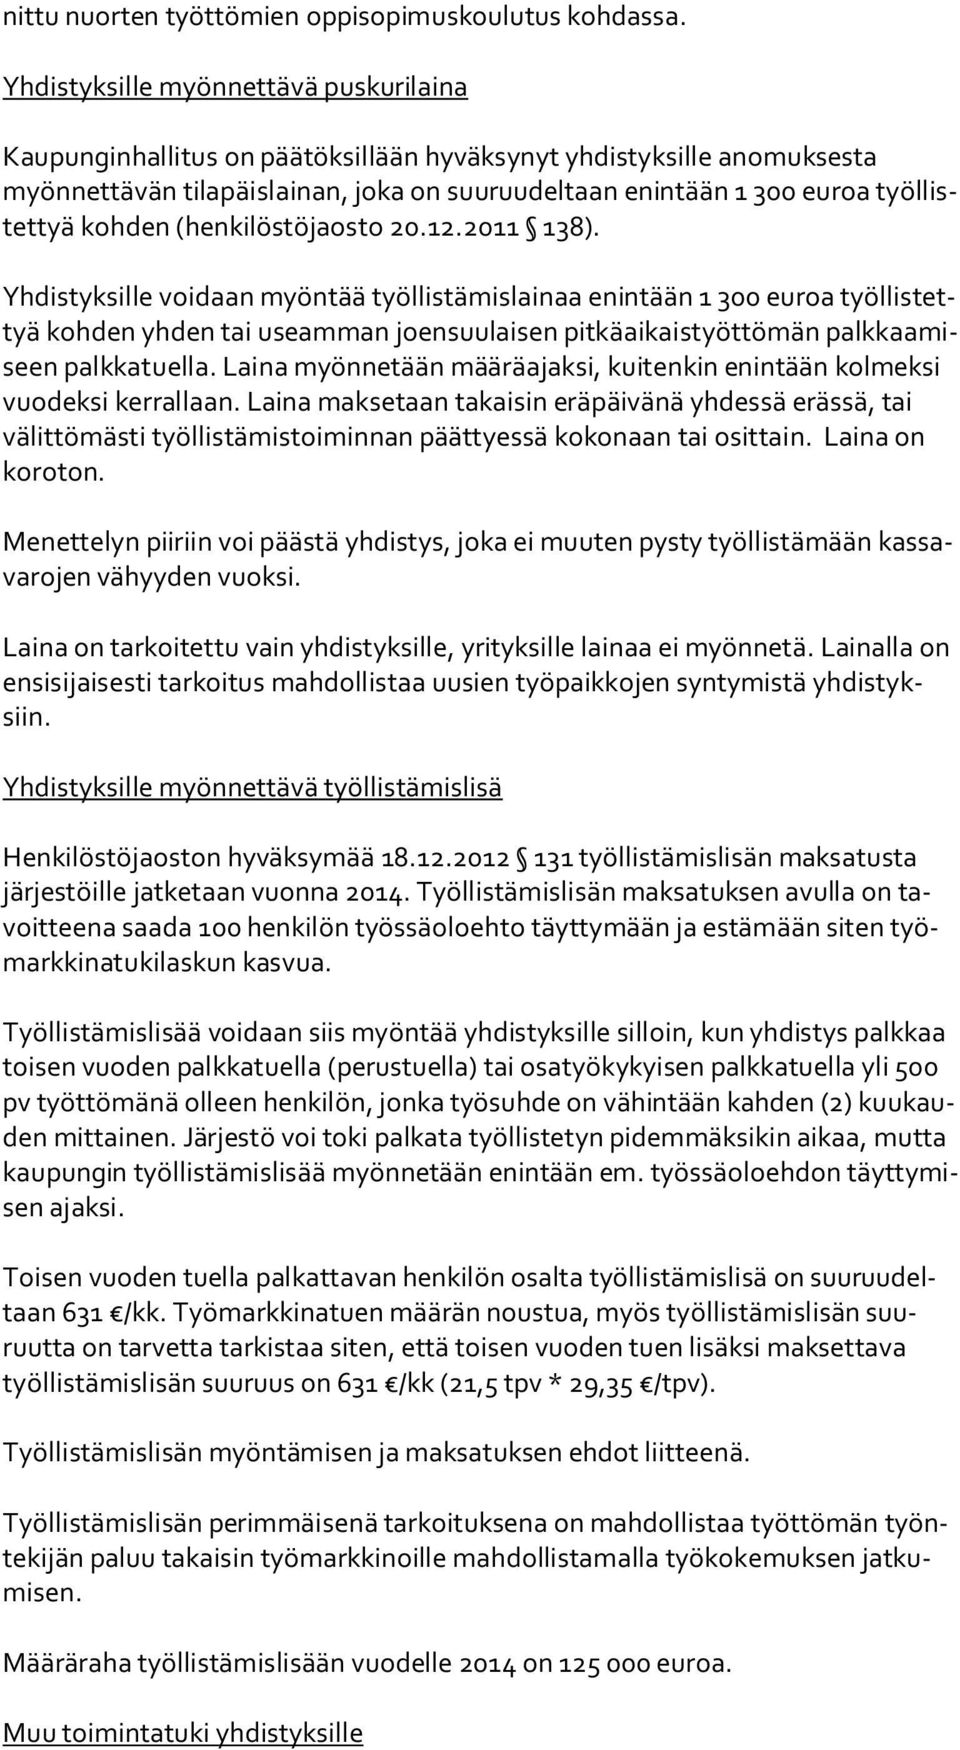 tyä kohden (henkilöstöjaosto 20.12.2011 138).